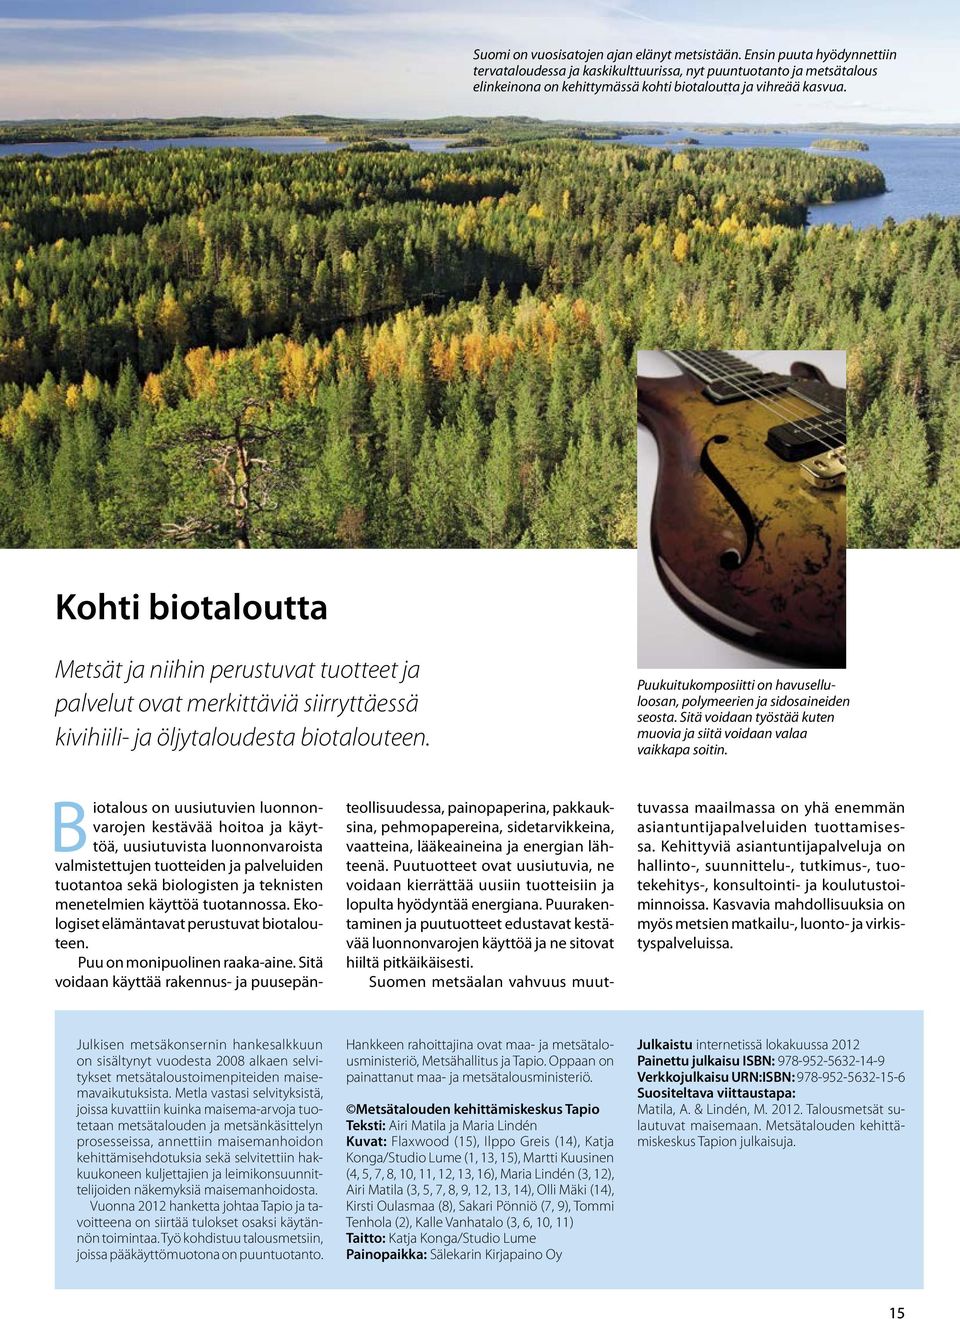 Kohti biotaloutta Metsät ja niihin perustuvat tuotteet ja palvelut ovat merkittäviä siirryttäessä kivihiili- ja öljytaloudesta biotalouteen.